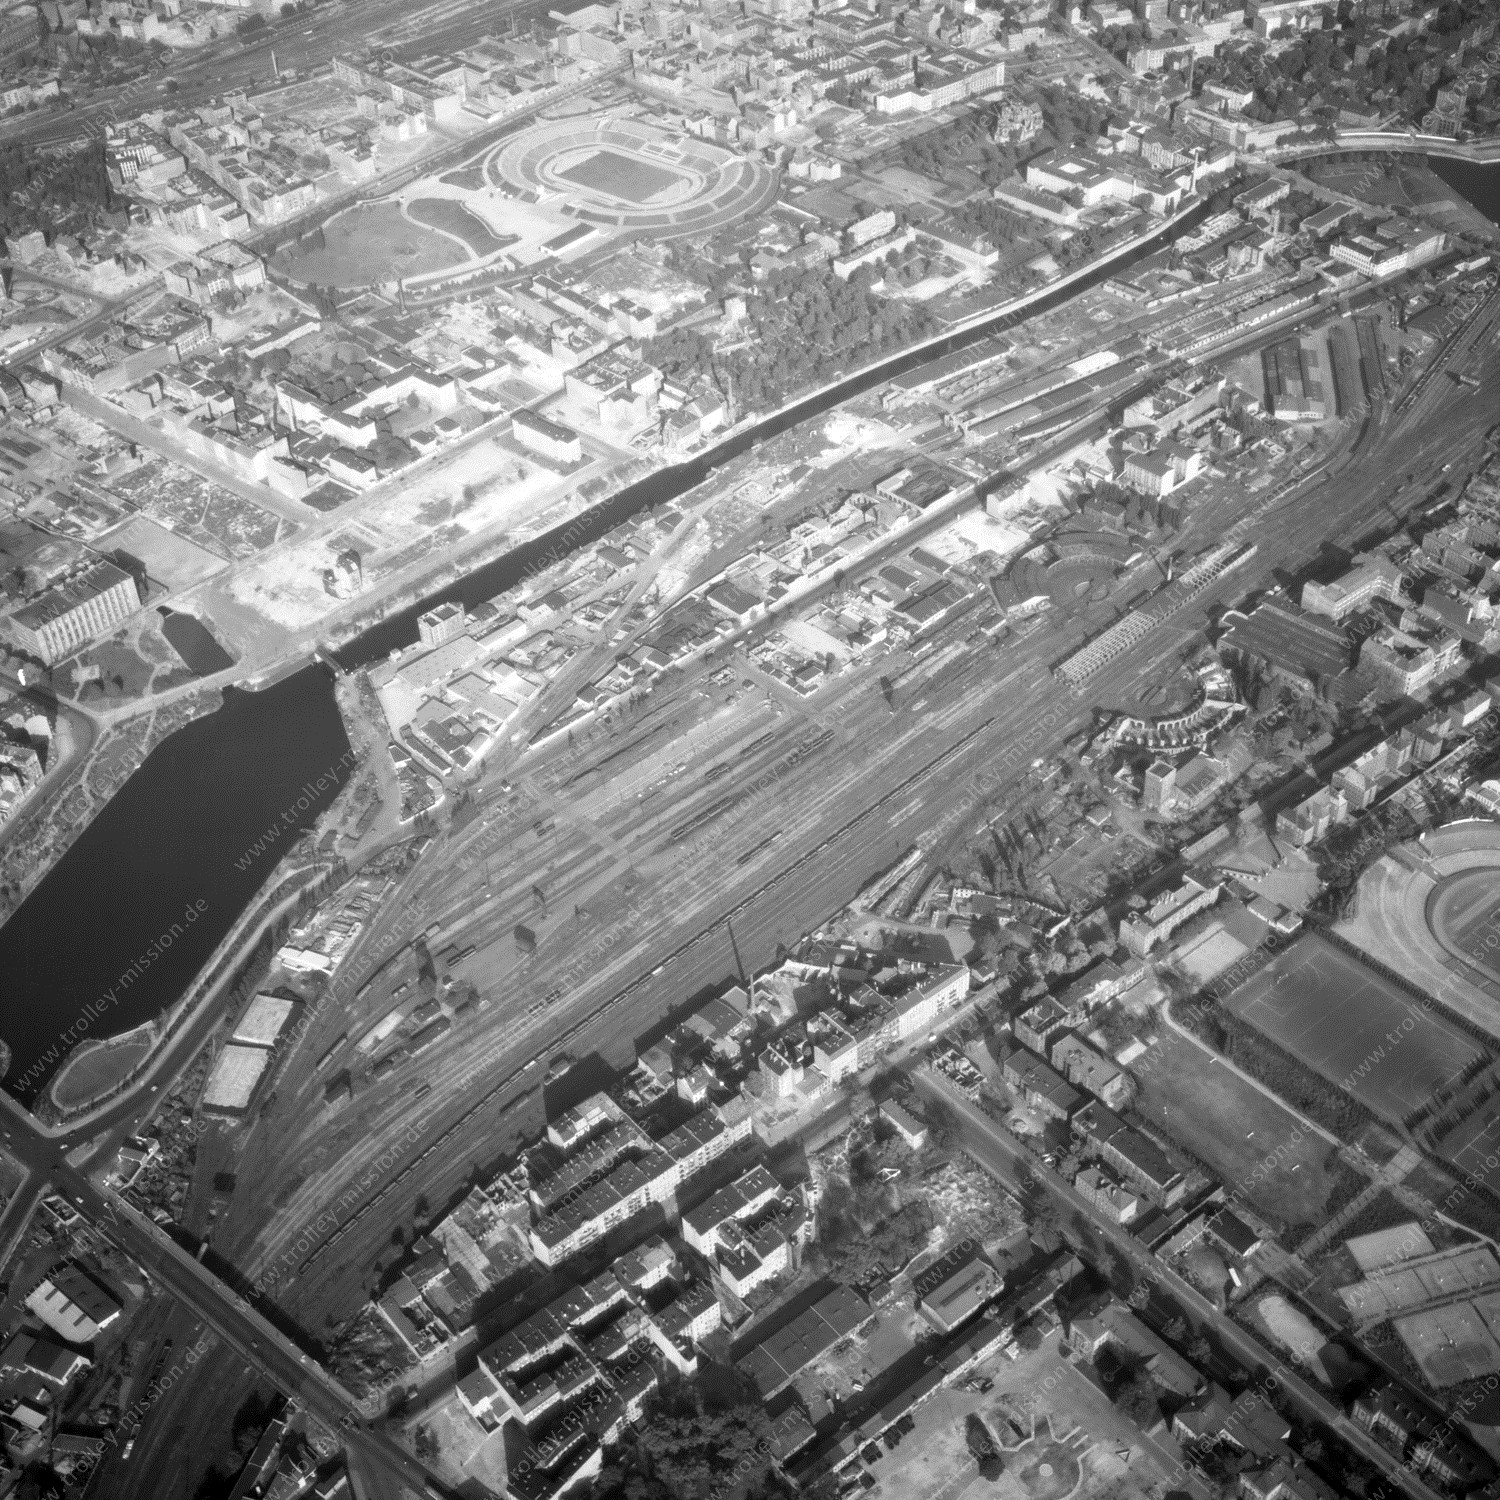 Alte Fotos und Luftbilder von Berlin - Luftbildaufnahme Nr. 03 - Historische Luftaufnahmen von West-Berlin aus dem Jahr 1954 - Flugstrecke Papa